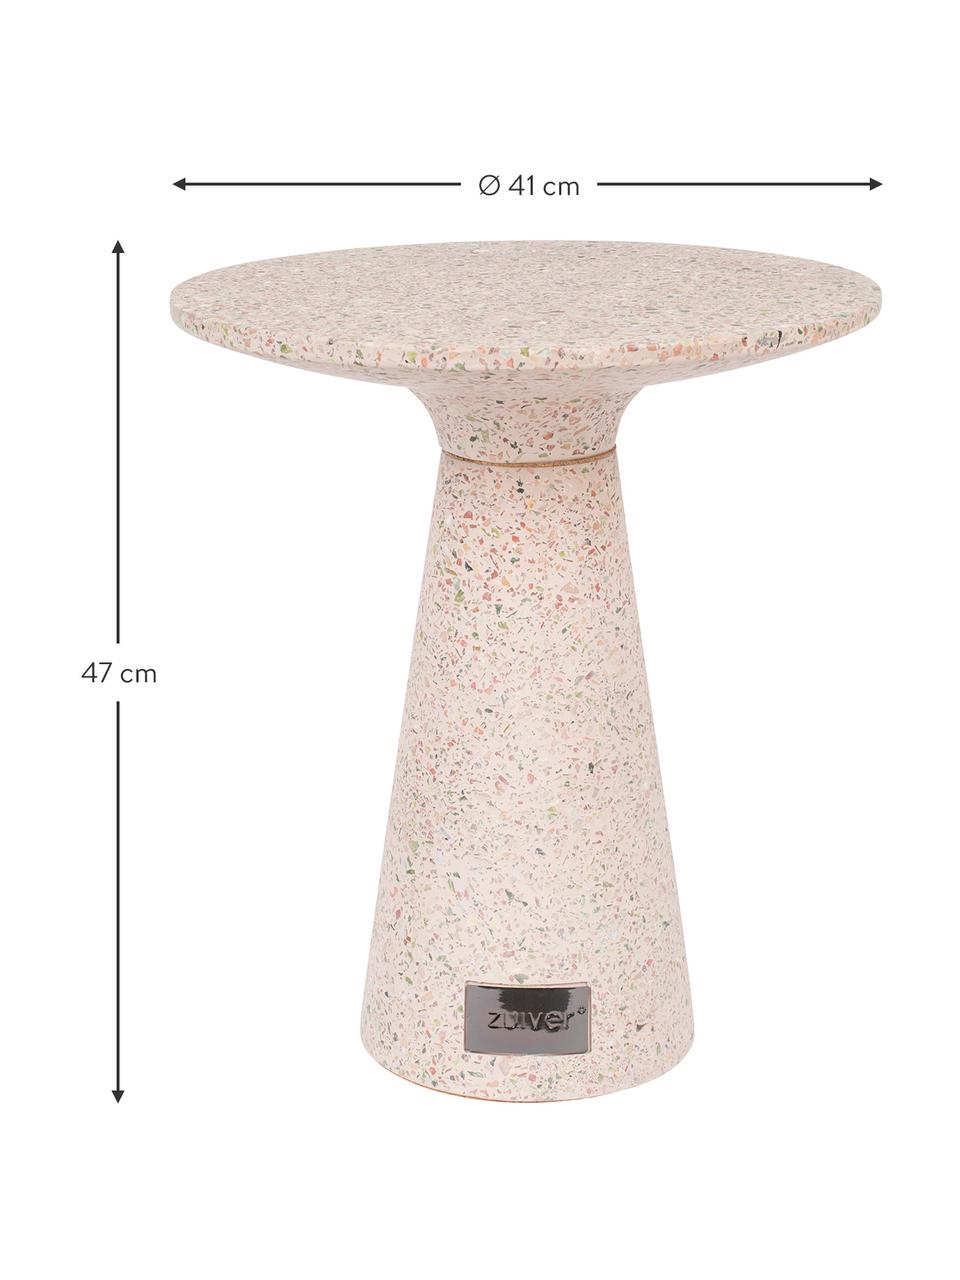 Ogrodowy stolik pomocniczy z tworzywa sztucznego z recyklingu Victoria, Blady różowy, Ø 41 x W 47 cm